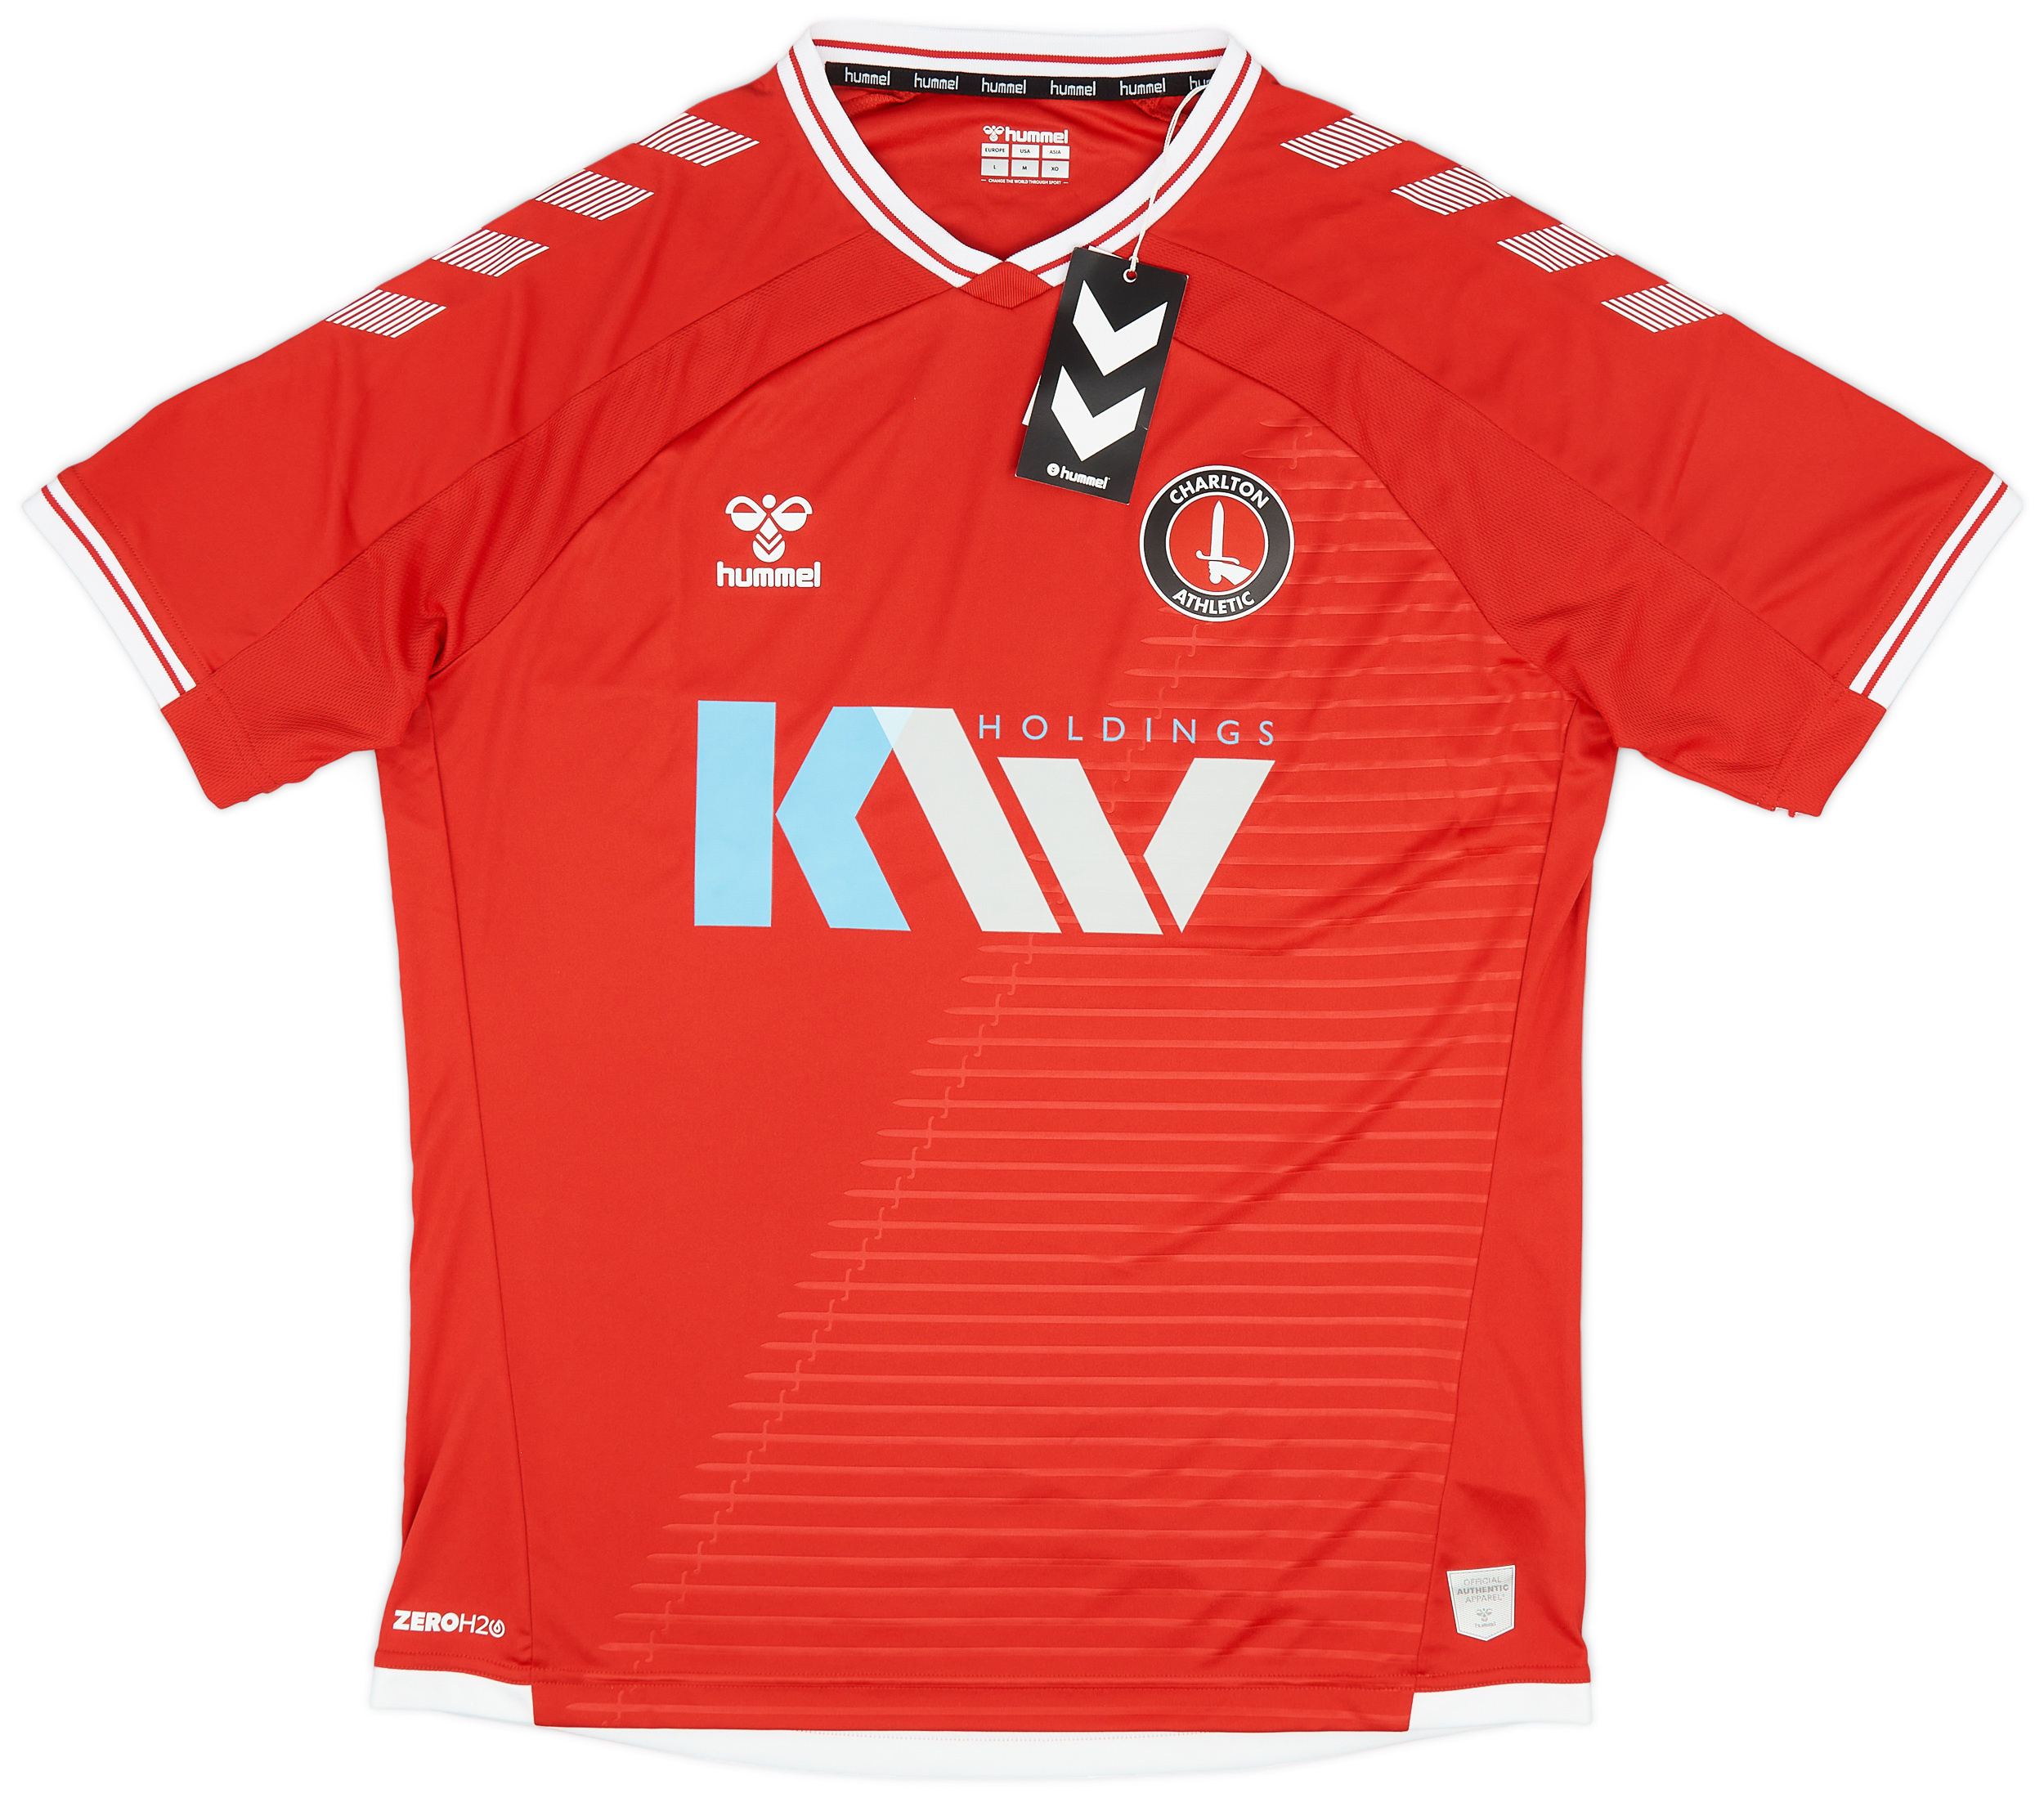 Retro Charlton Athletic Shirt